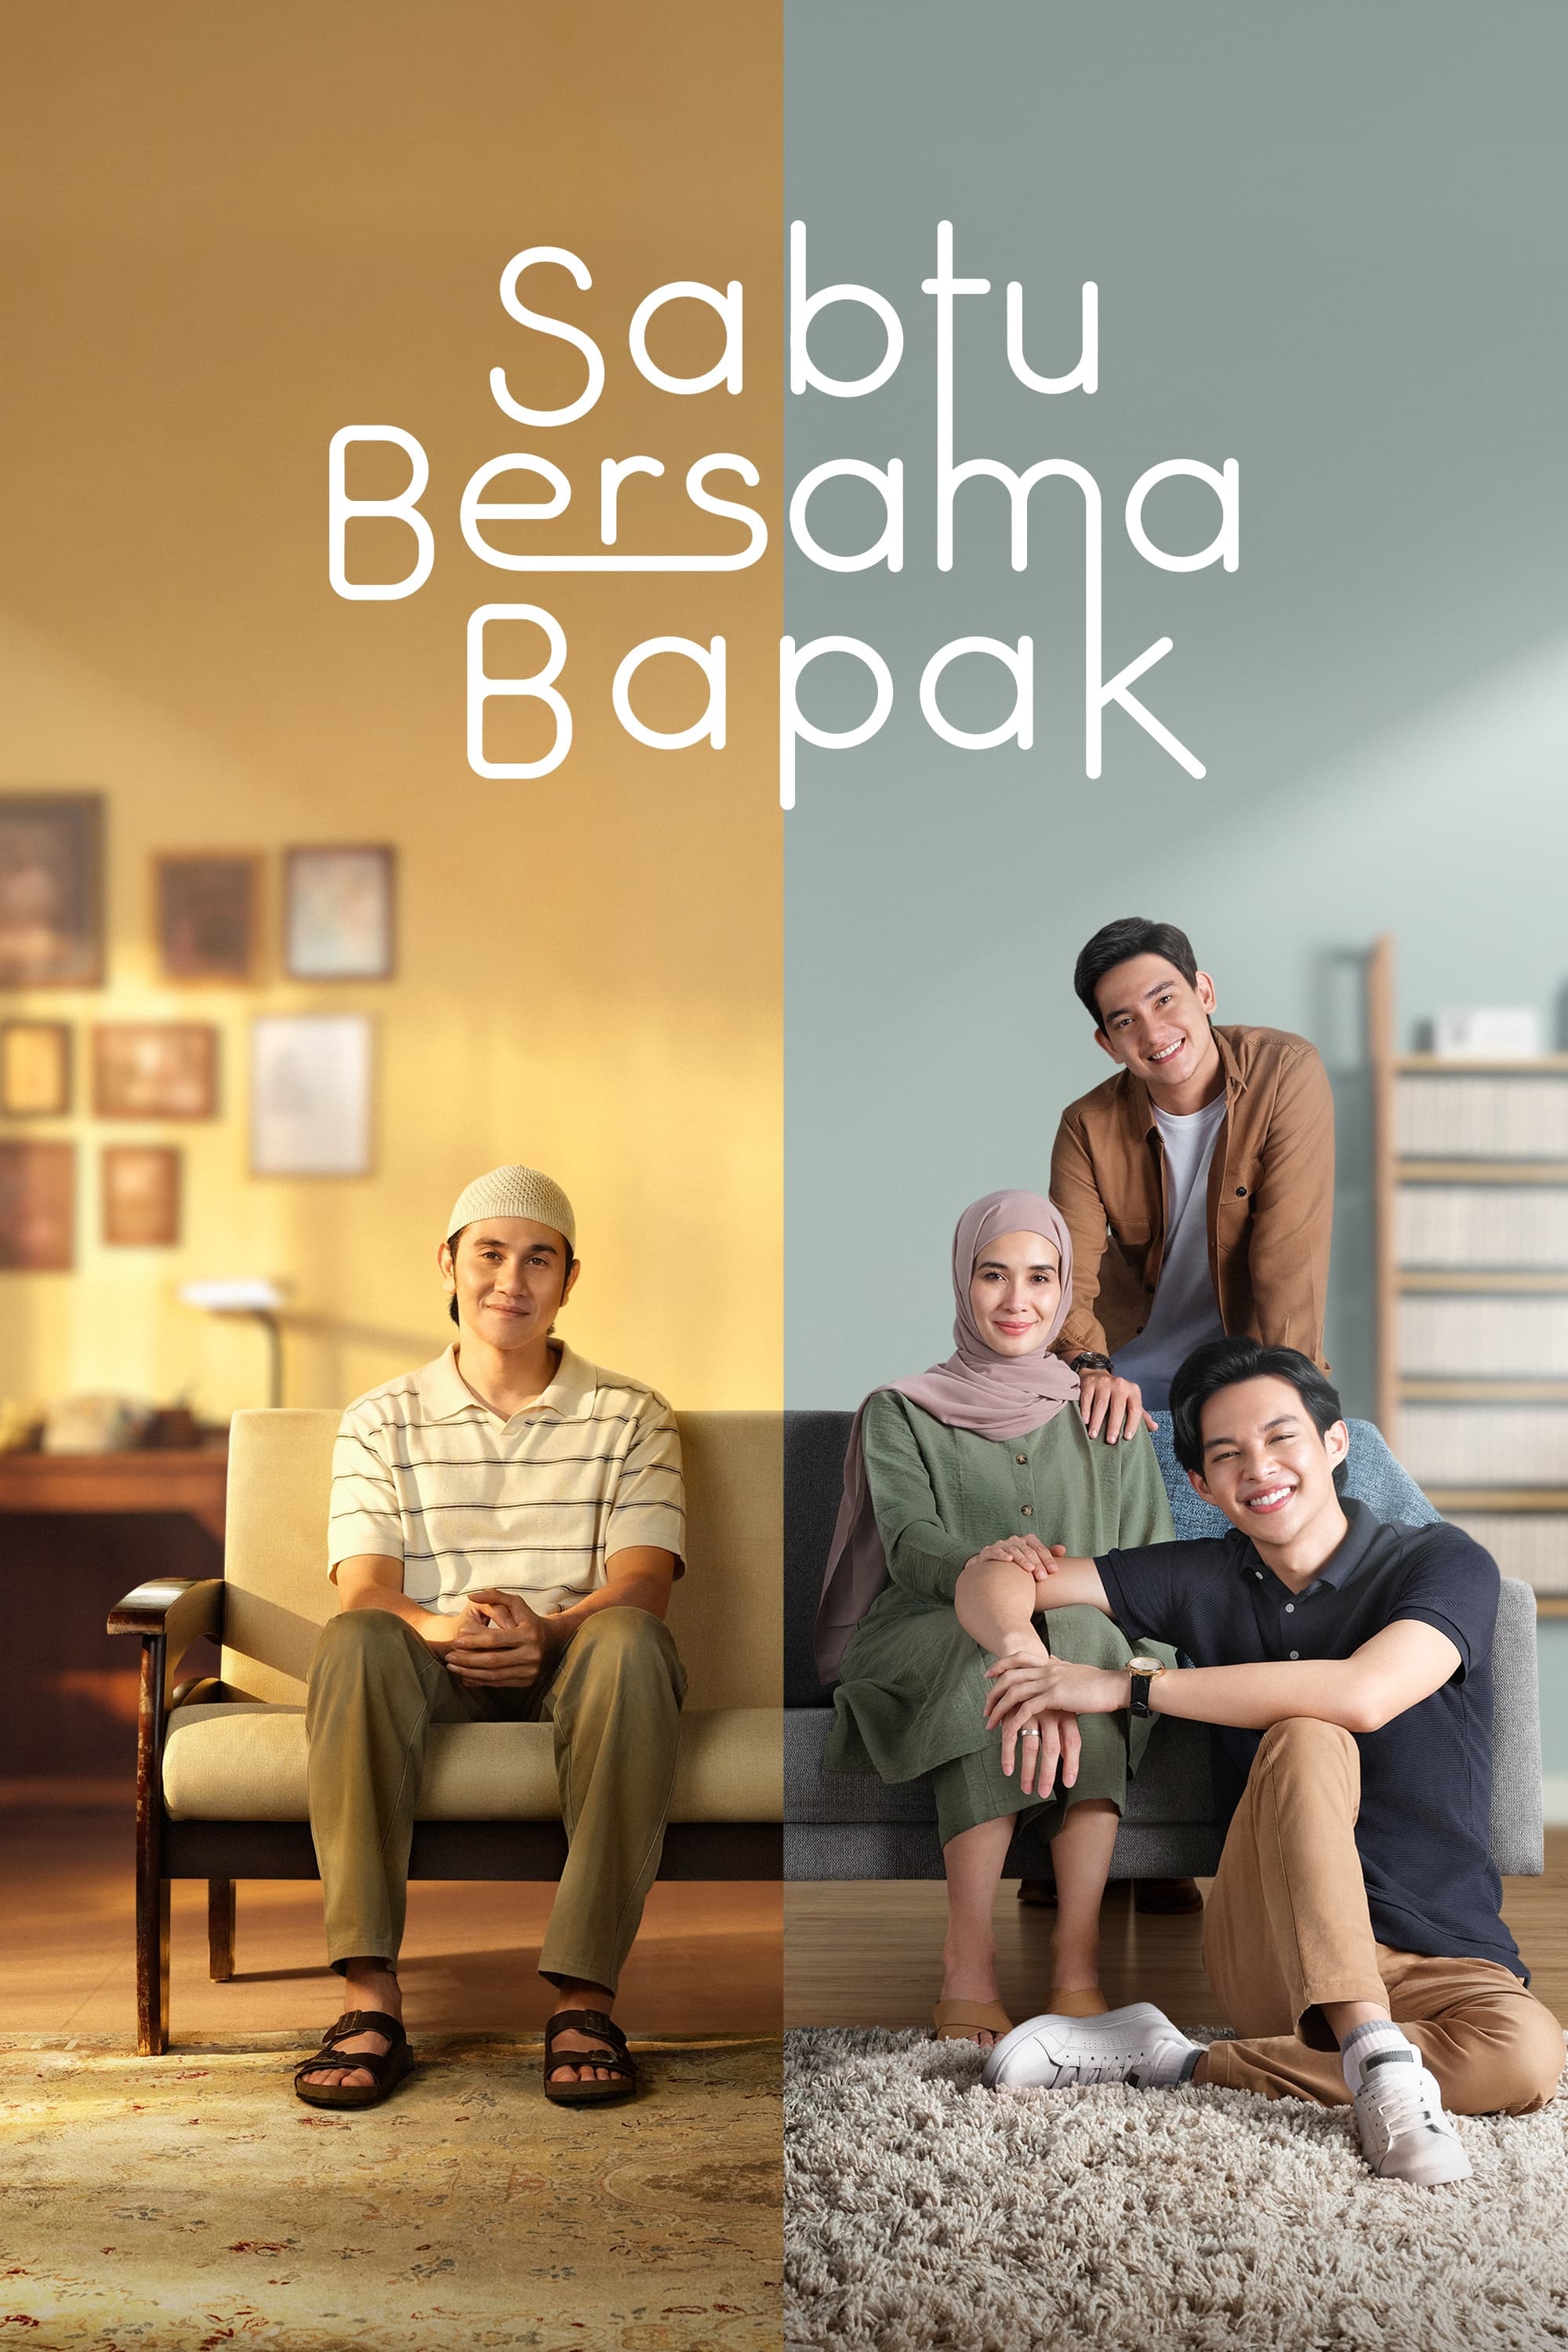 TV ratings for Saturday With Dad (Sabtu Bersama Bapak) in Turkey. Amazon Prime Video TV series